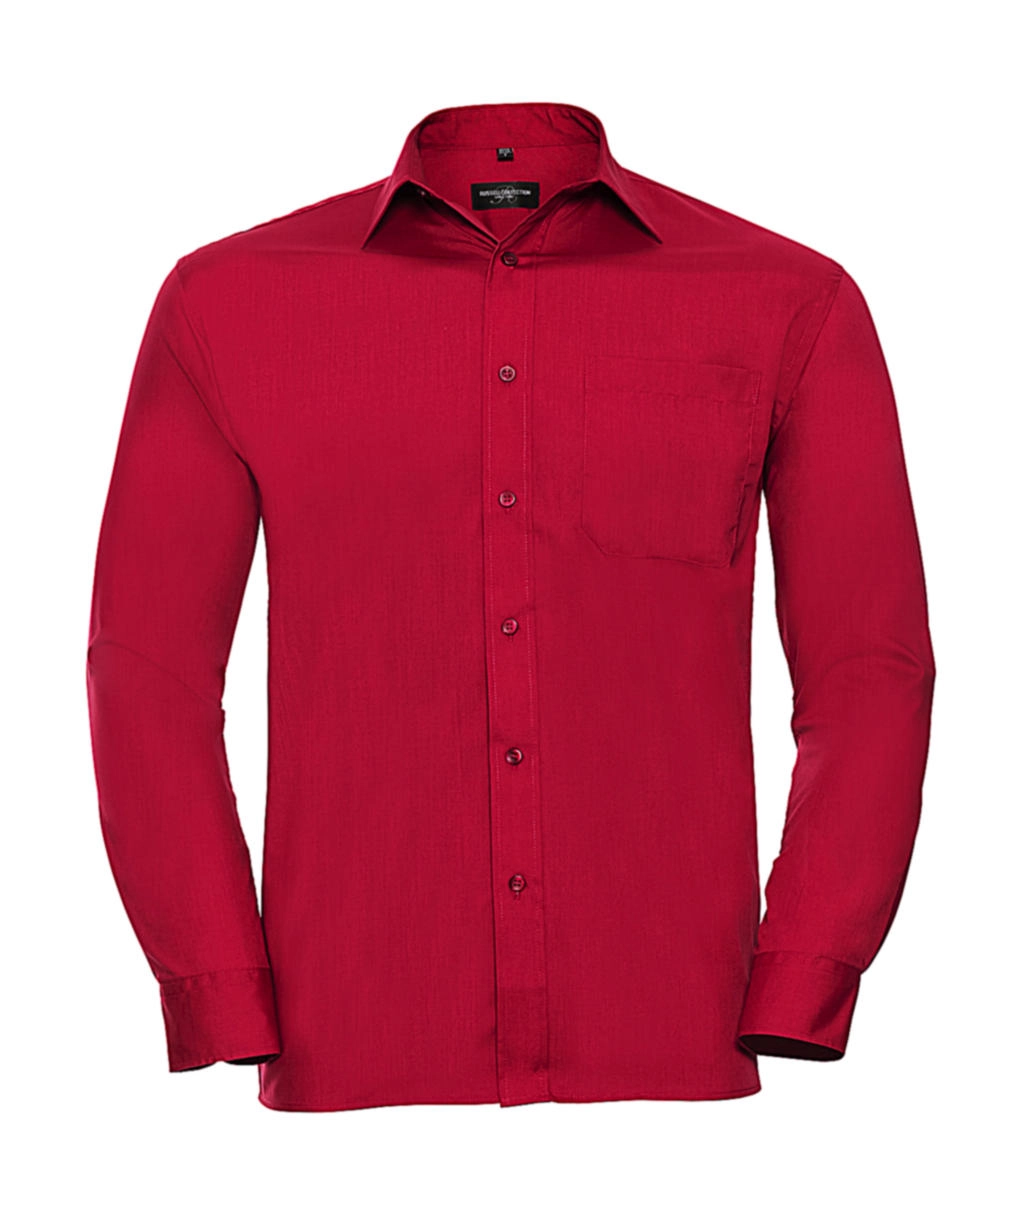 Poplin Shirt LS zum Besticken und Bedrucken in der Farbe Classic Red mit Ihren Logo, Schriftzug oder Motiv.